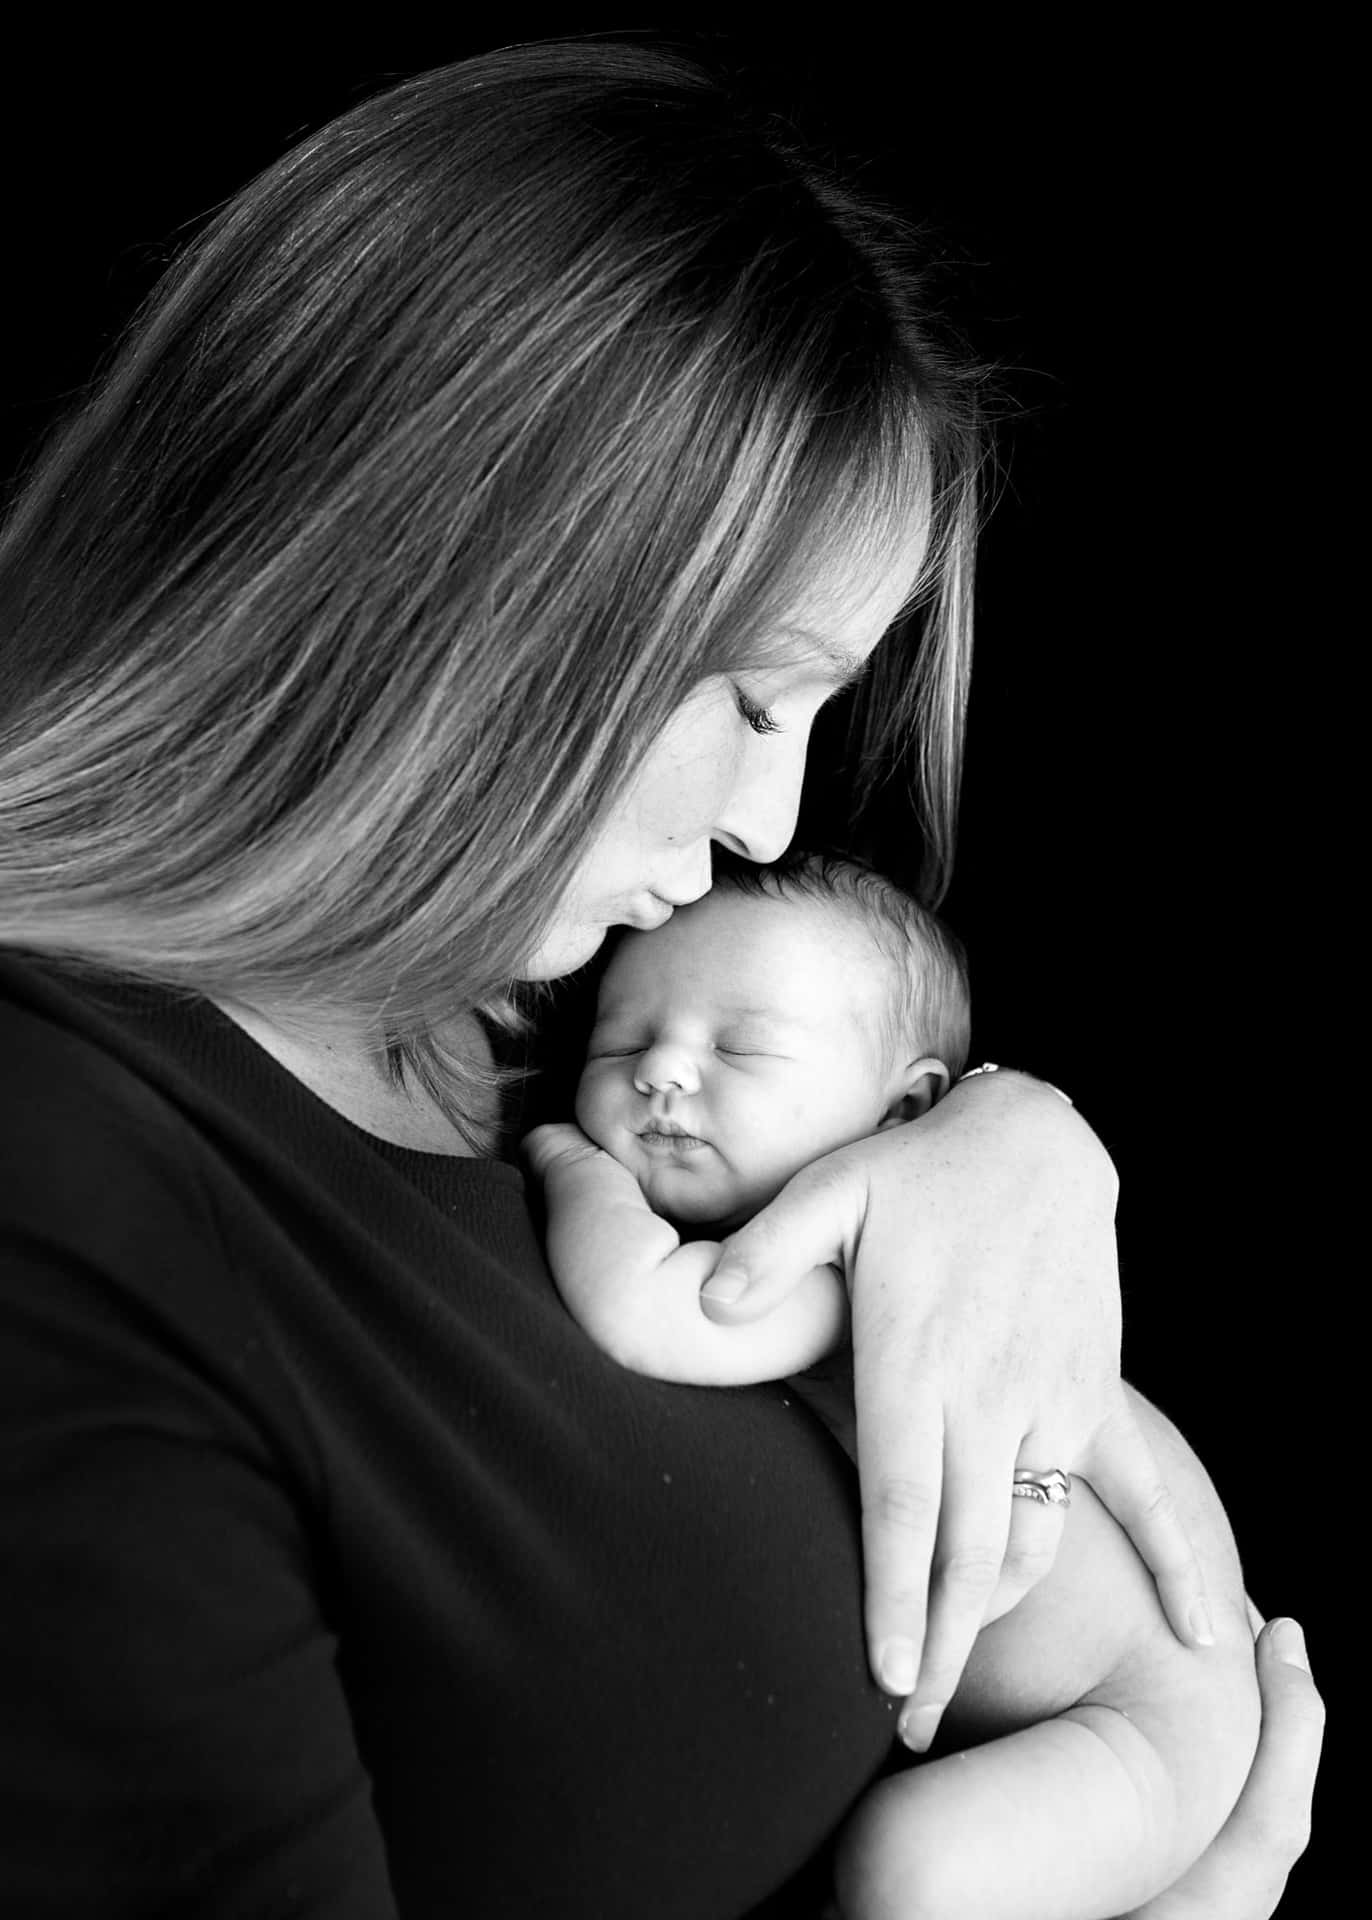 Einefrau Hält Ihr Neugeborenes Baby In Schwarz-weiß.